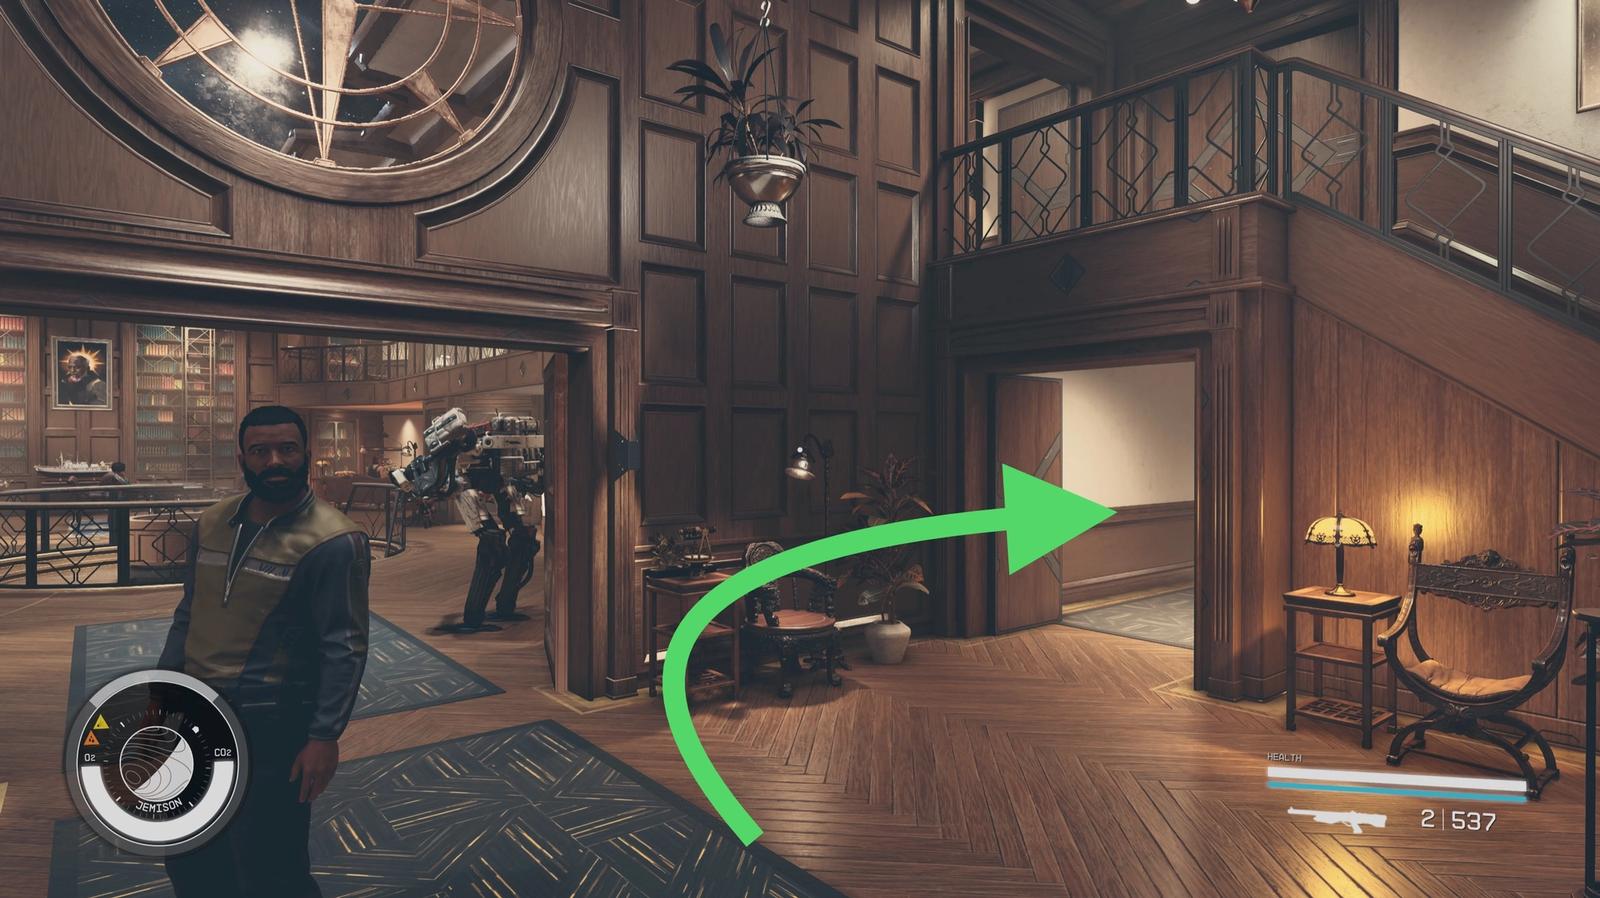 arrow pointing to the open basement door